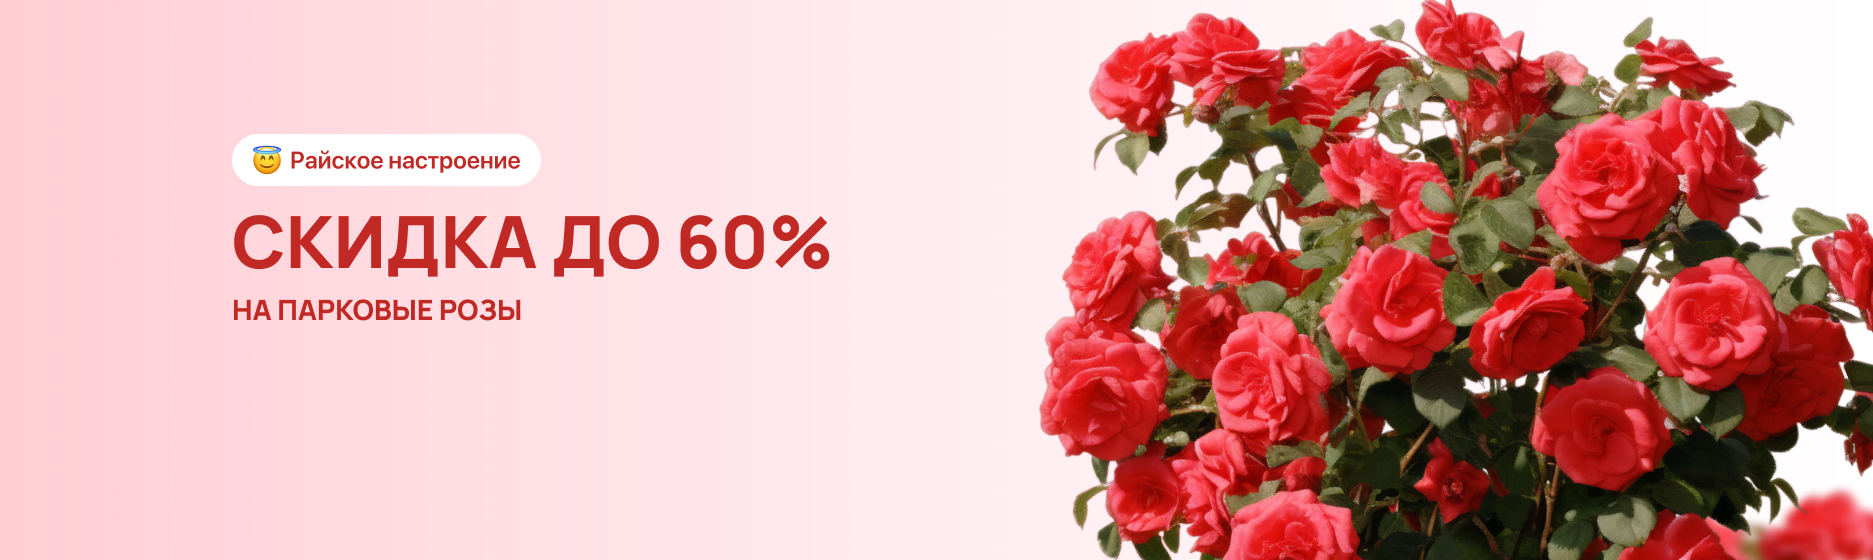 Парковые розы со скидкой до 60%